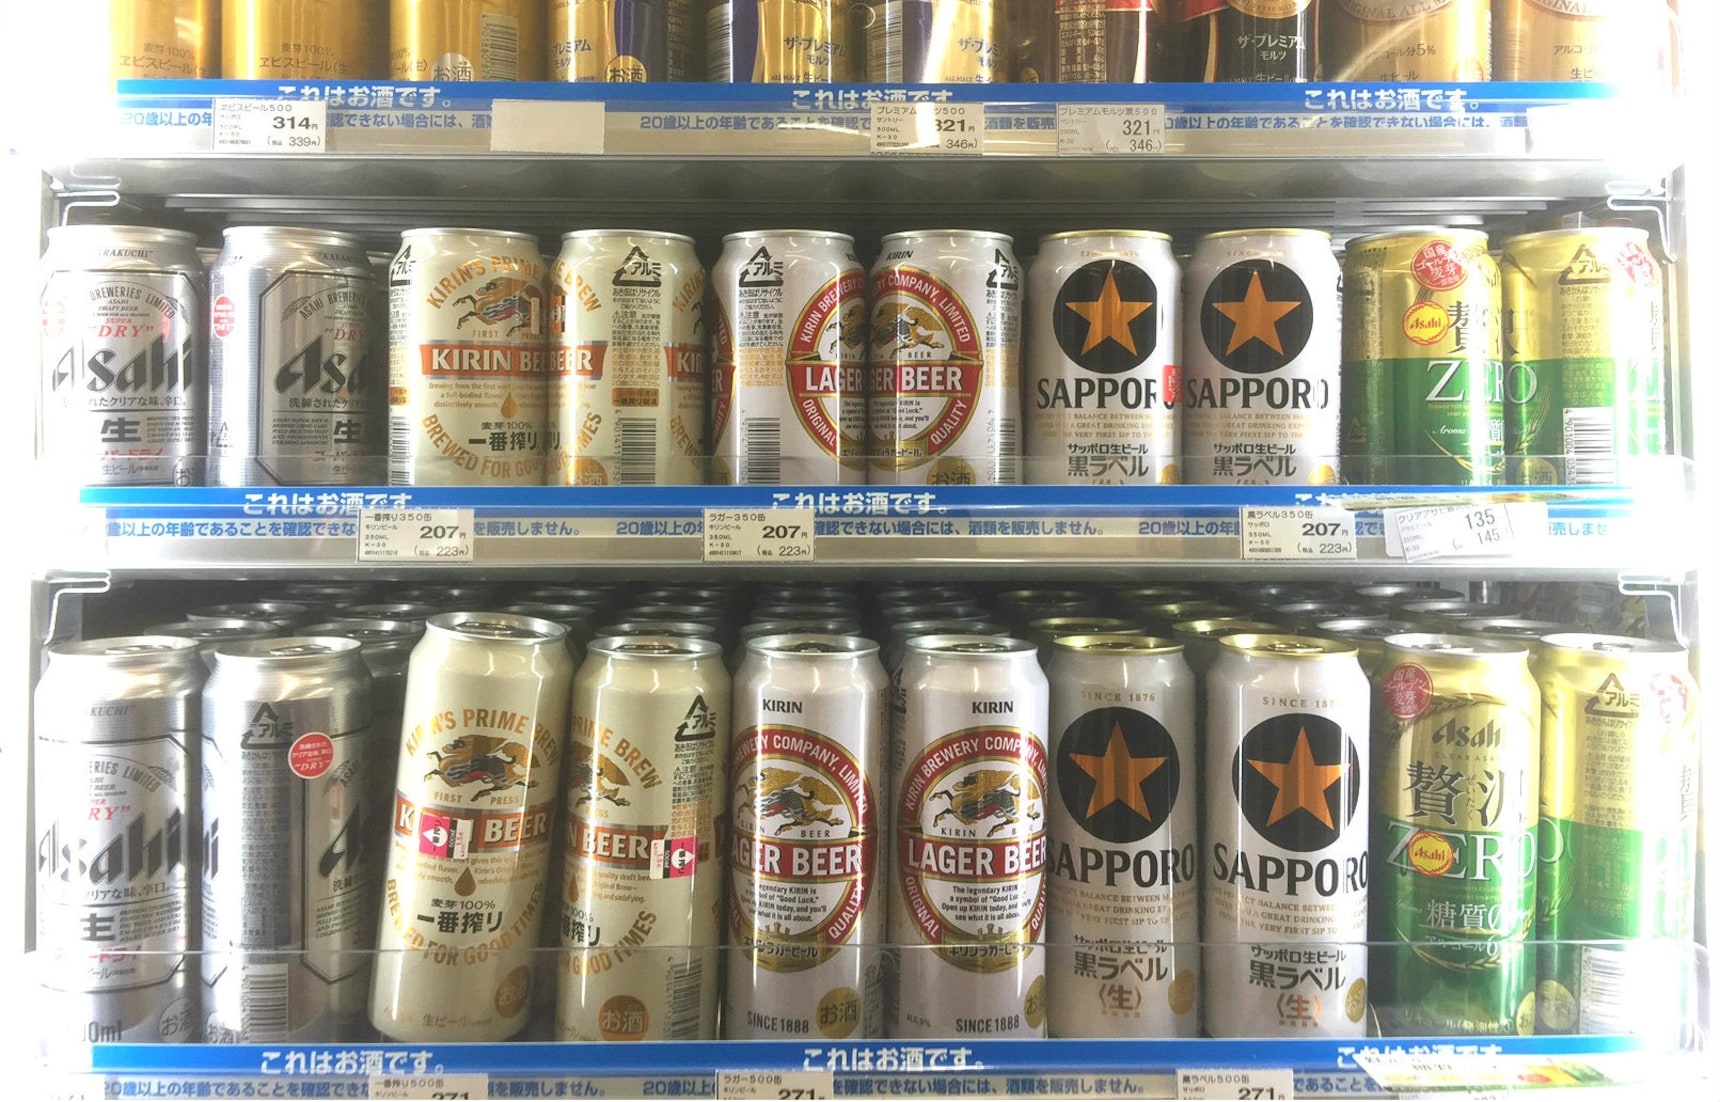 The Top 6 Beers in Japan